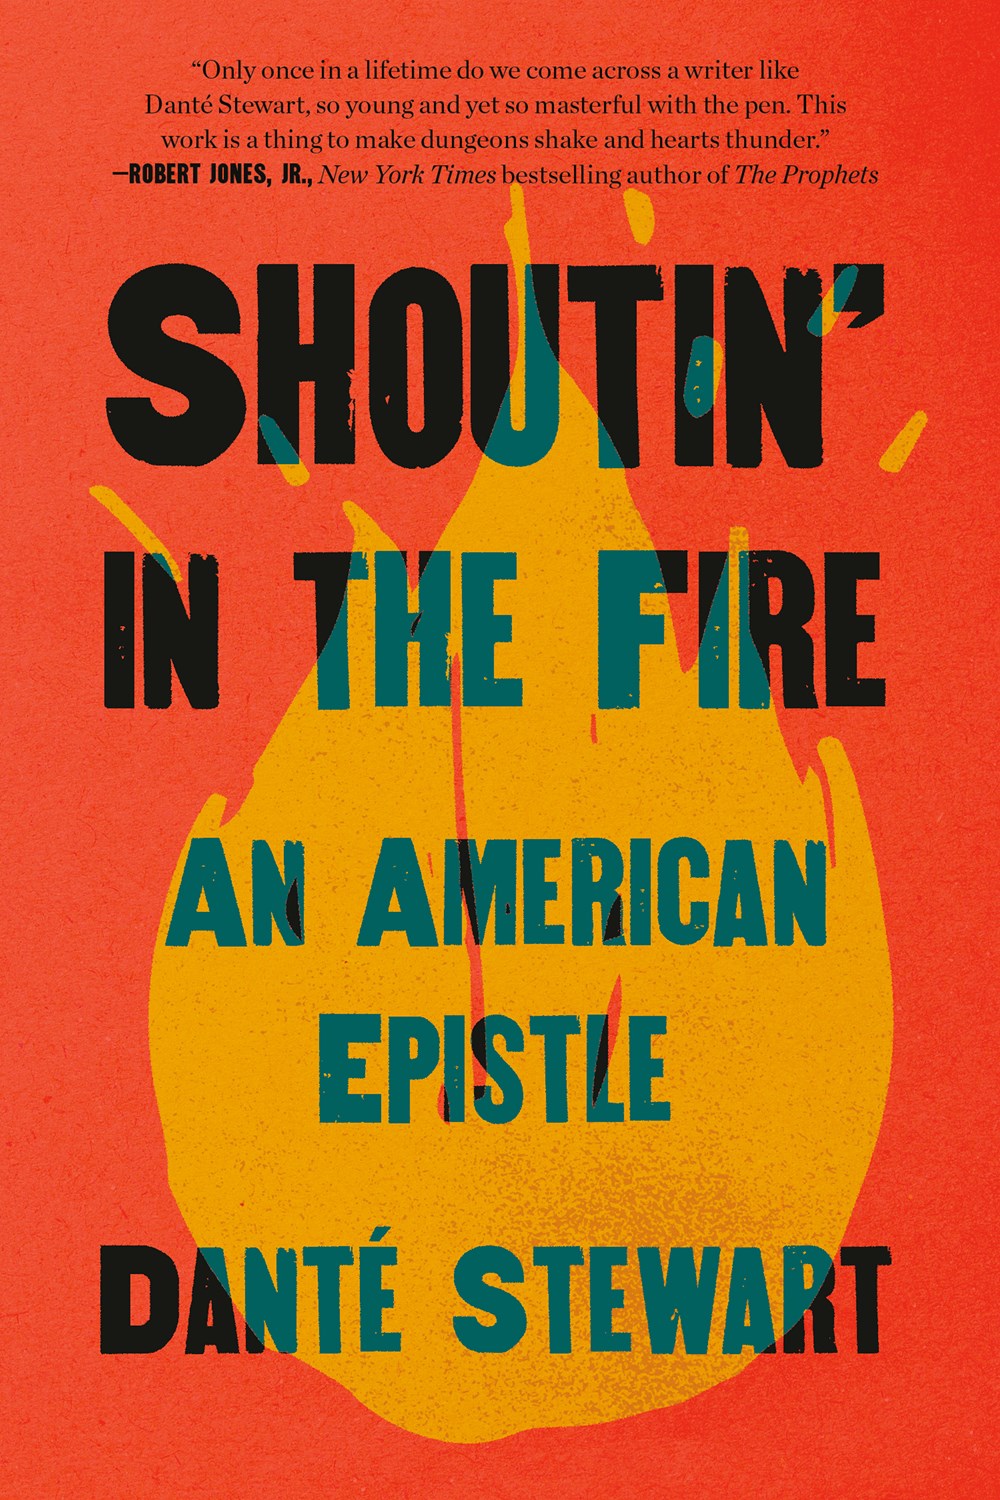 Shoutin' In The Fire by Dante Stewart